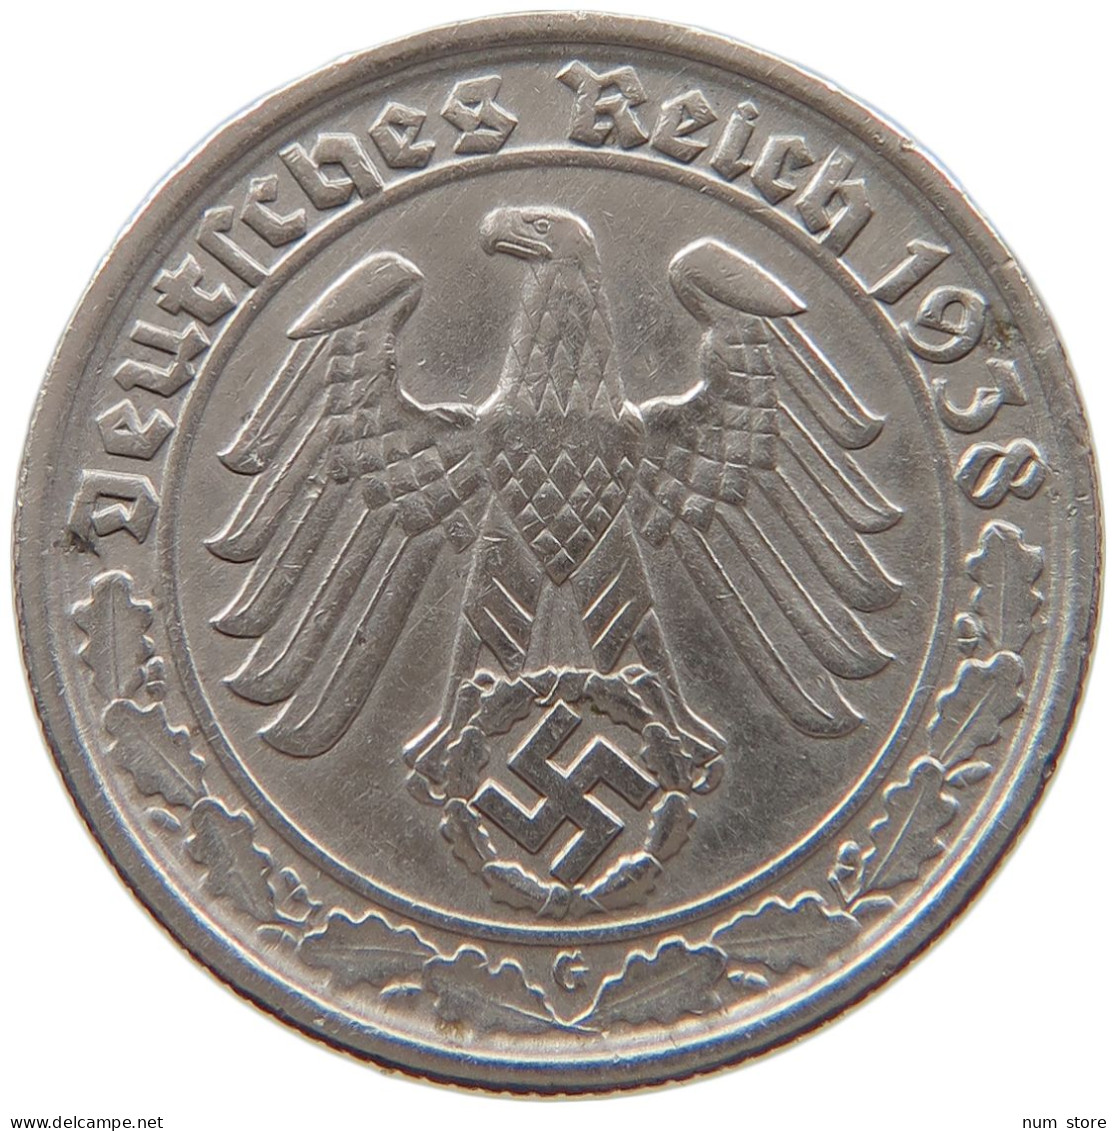 GERMANY 50 REICHSPFENNIG 1938 G #t030 0439 - 50 Reichspfennig